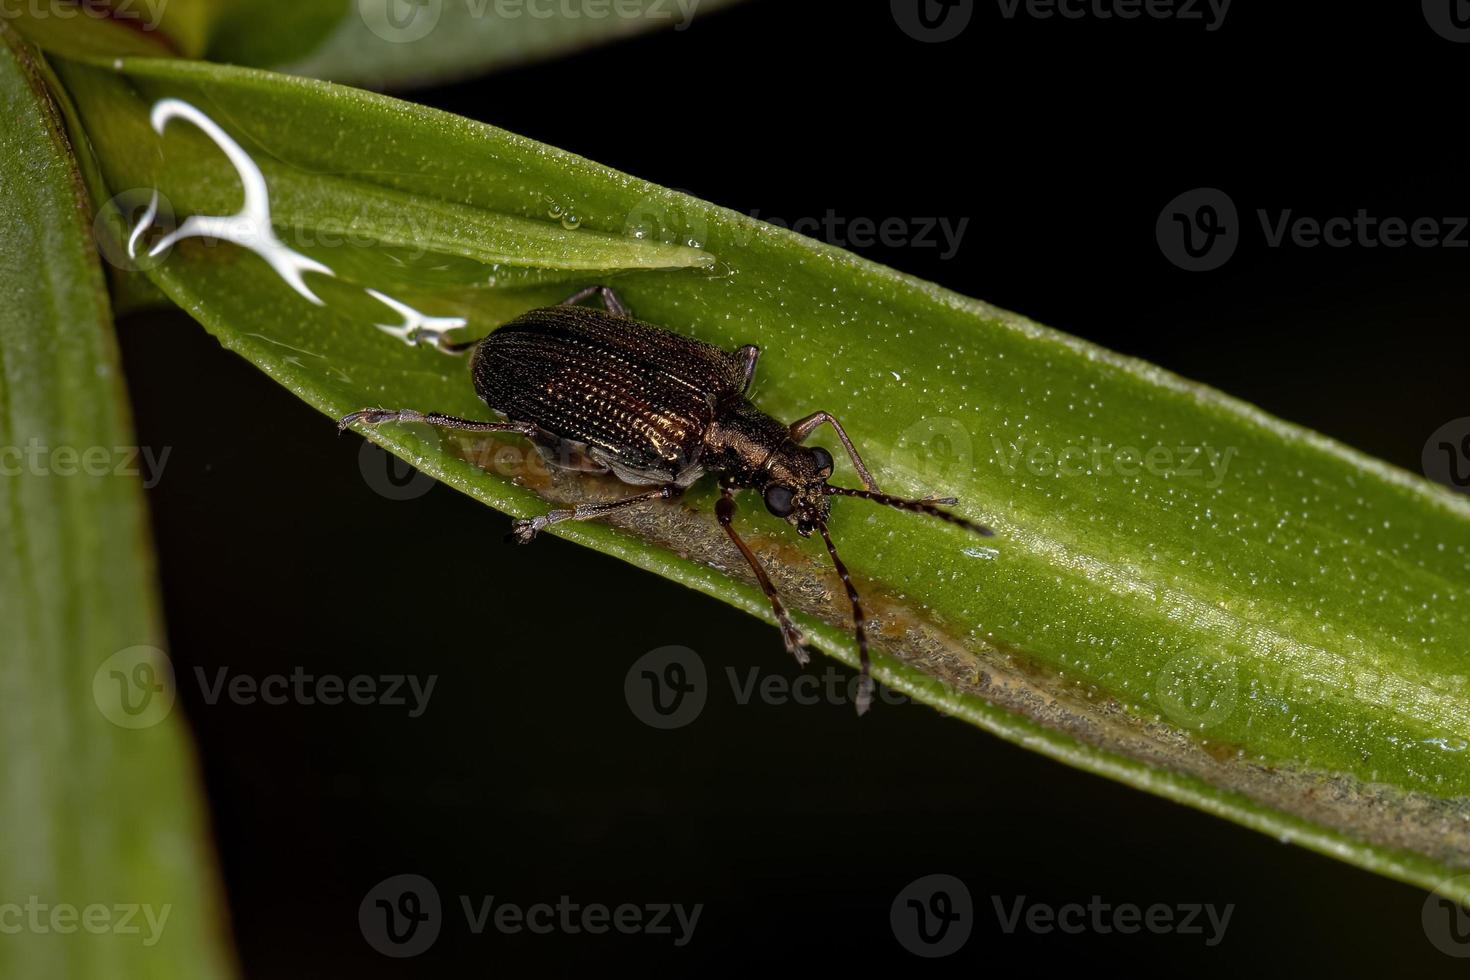 escarabajo adulto foto